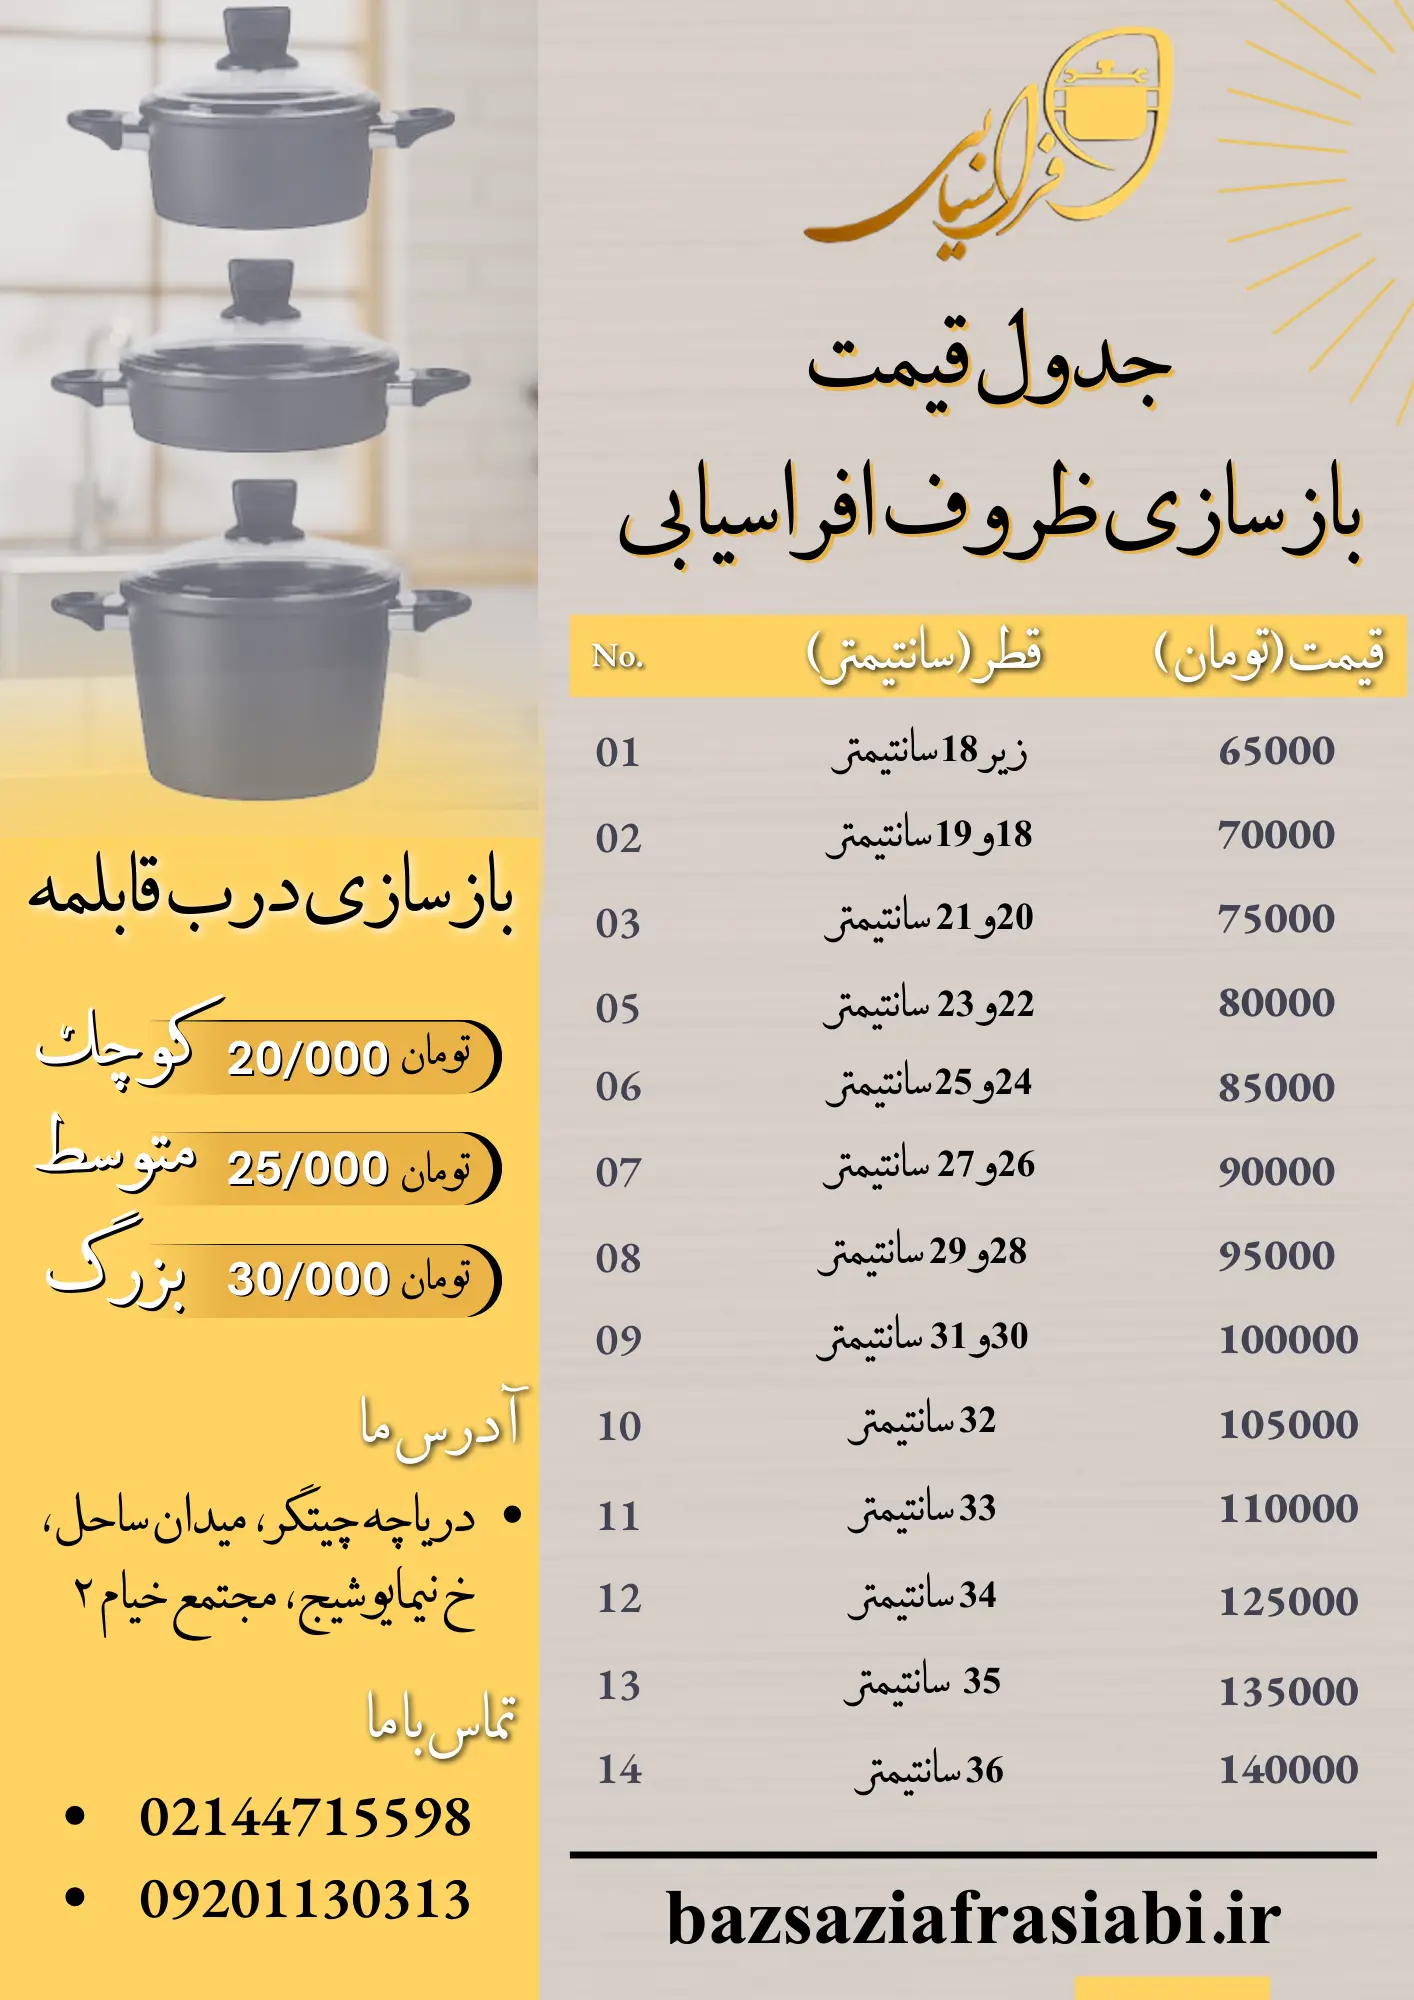 لیست قیمت بازسازی ظروف تفلون، چدن سرامیکی در تهران